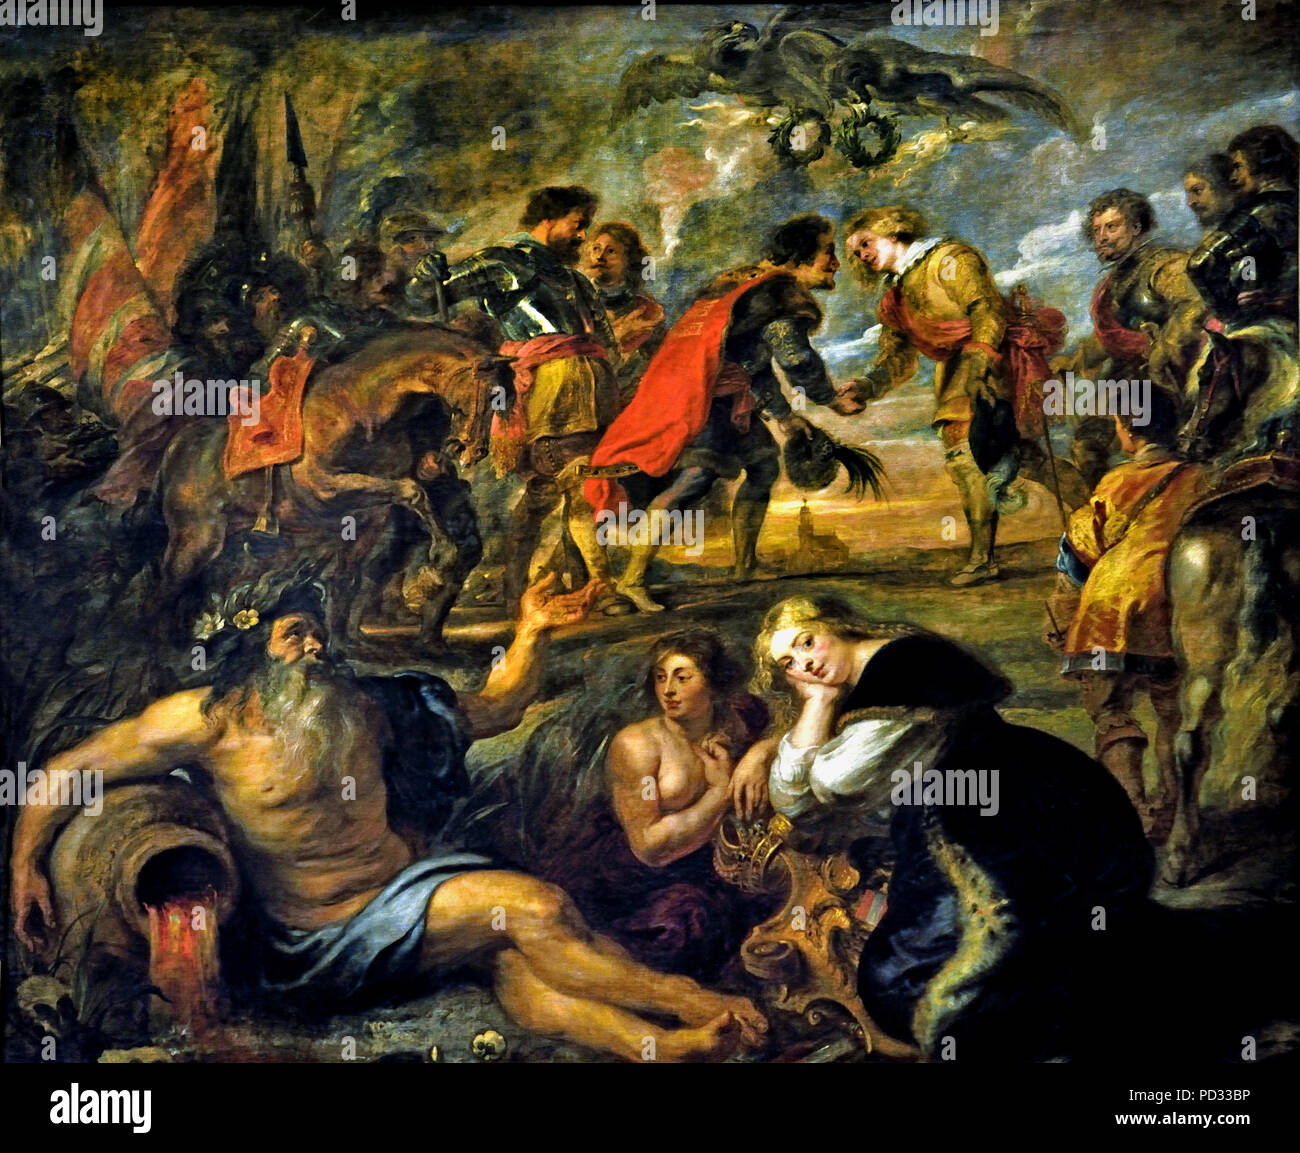 Par Peter Paul Rubens (1577-1640) Belgique Belge Flamande ( La bataille de Nördlingen 1634 pendant la Guerre de Trente Ans, l'armée impériale Catholique Romaine, soutenue par 15 000 soldats espagnols, a remporté une victoire écrasante sur les armées protestantes de la Suède et leurs alliés (German-Protestant Heilbronn Alliance). ) Banque D'Images